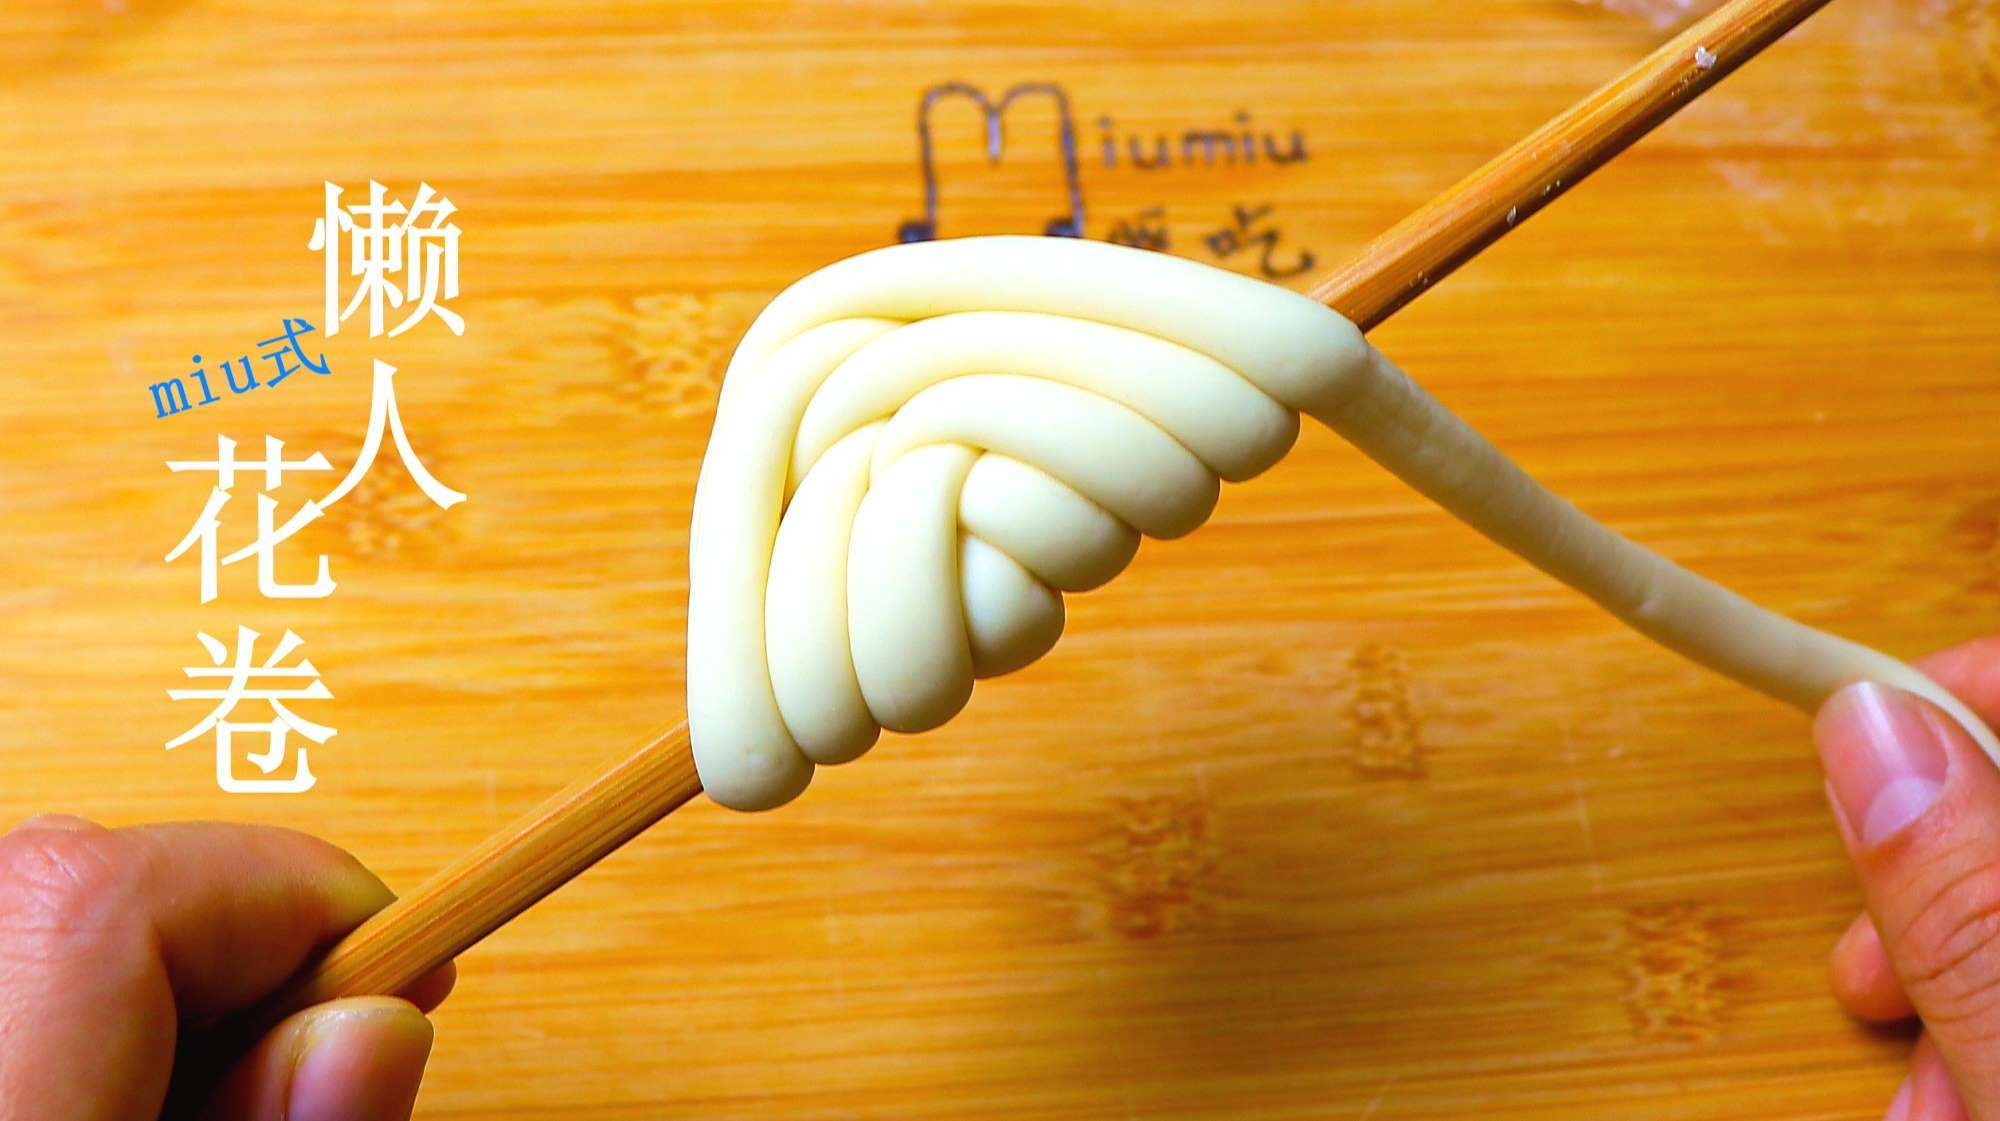 懒人做法,不用擀皮,只需要一根筷子 服务升级 3太阳花馒头:用南瓜和南